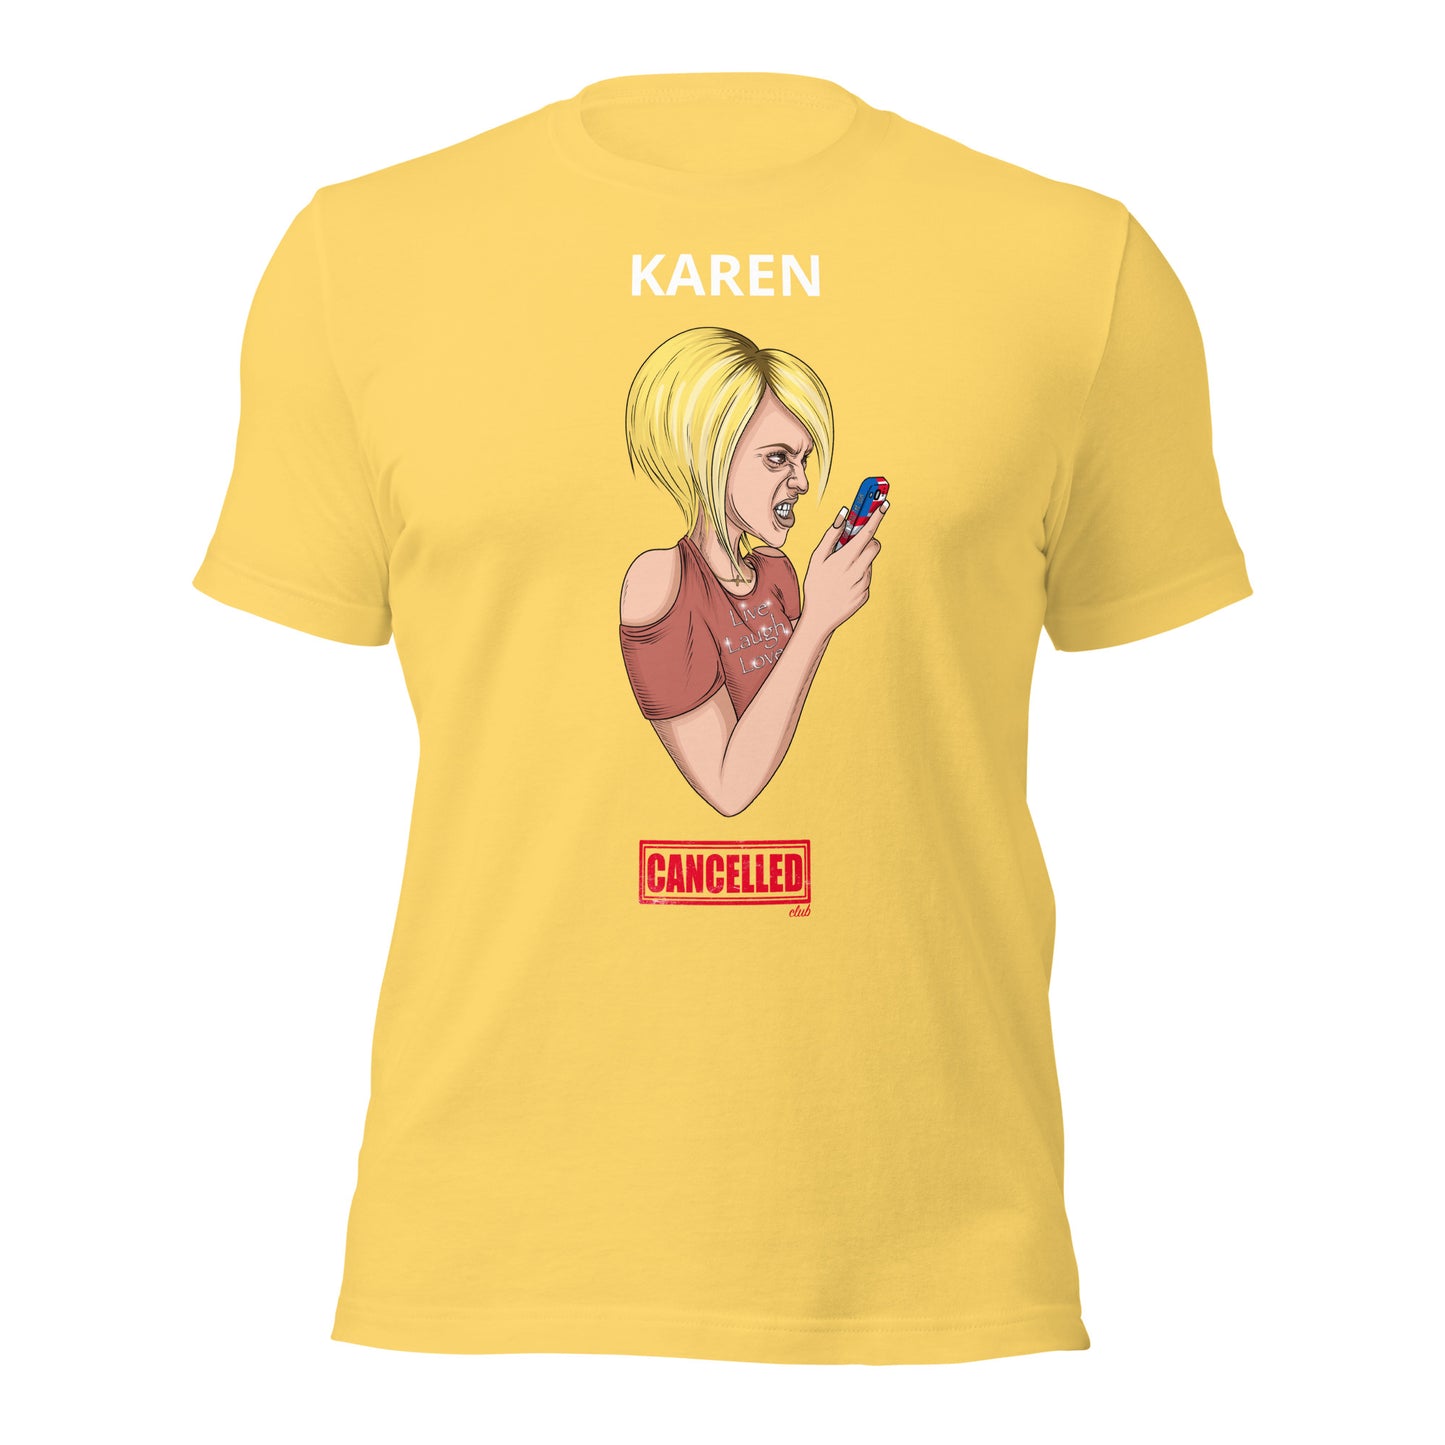 Unisex t-shirt - Karen